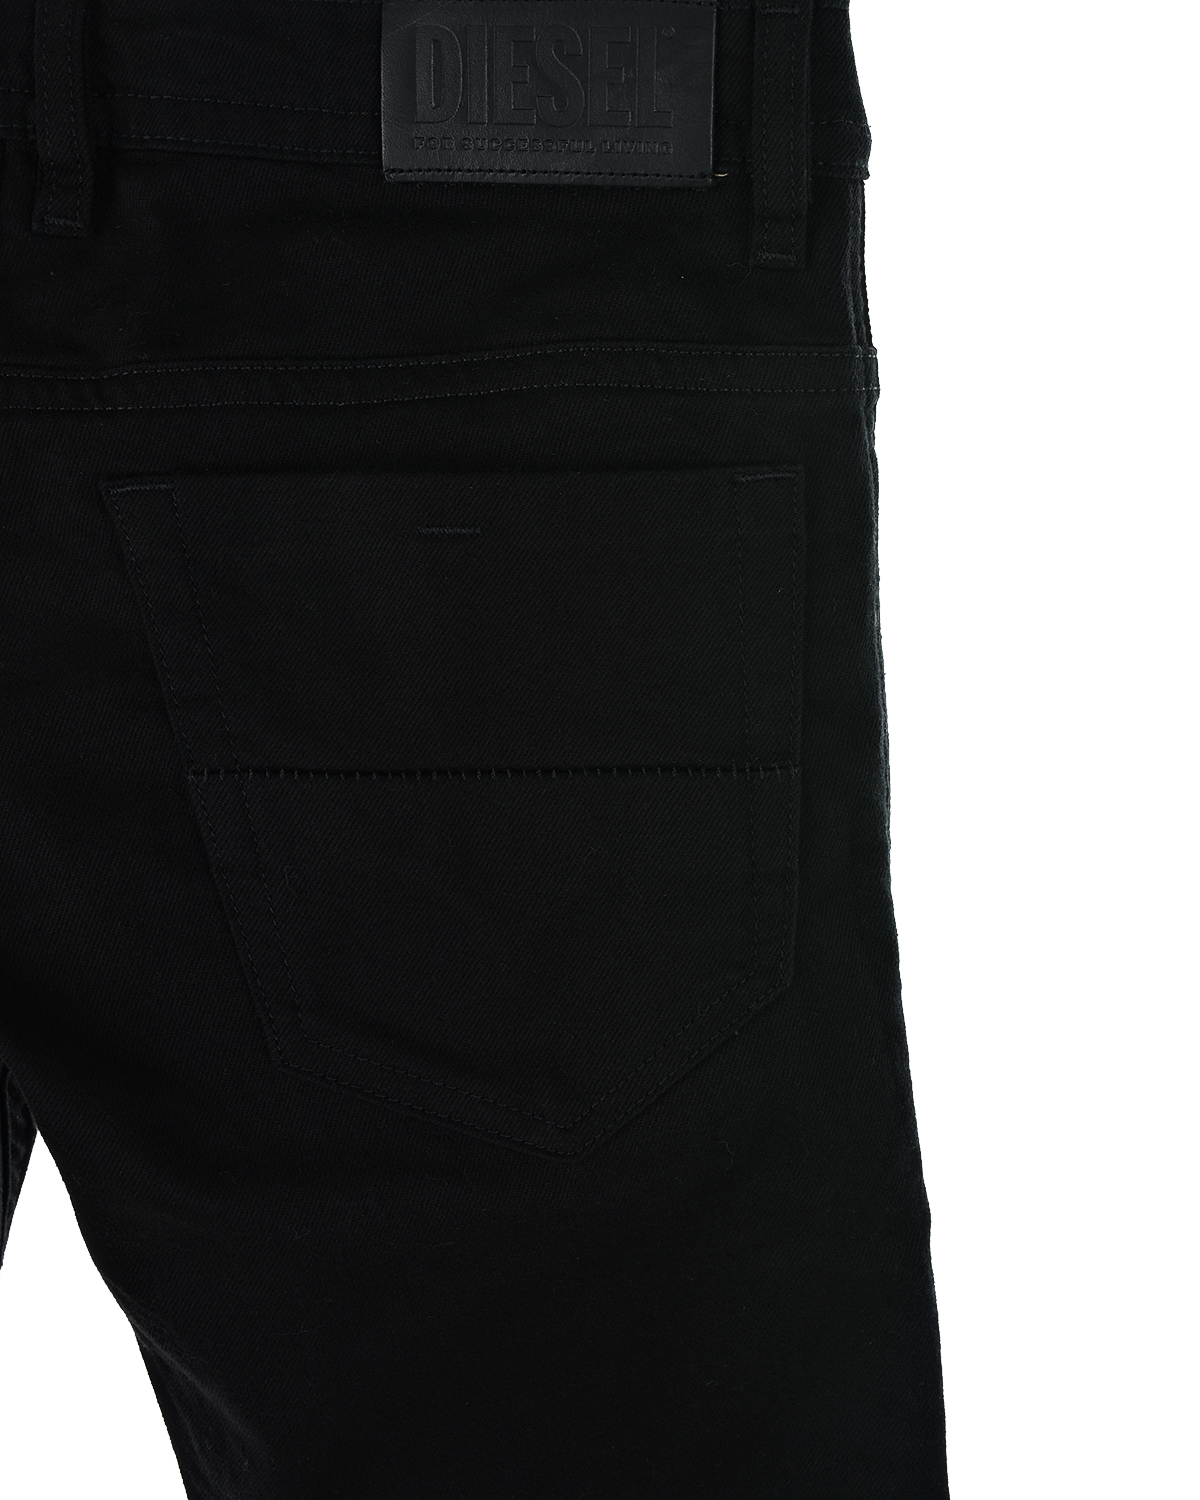 Узкие джинсы для мальчиков Diesel детские, размер 116, цвет черный - фото 5